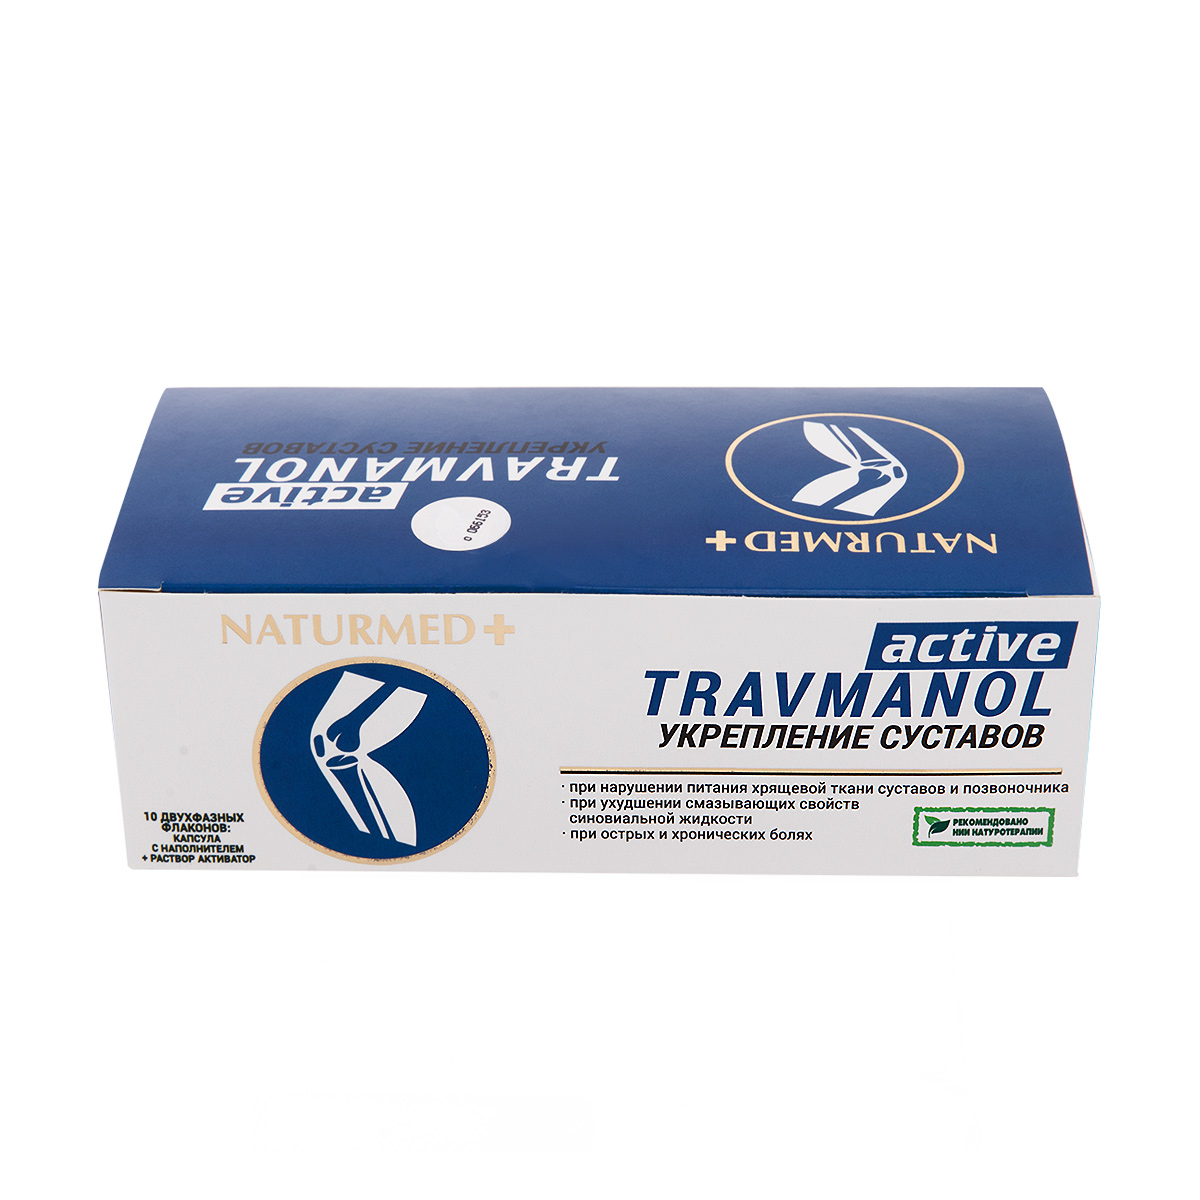 «Травманол актив» NaturMed, капсулы в среде-активаторе (10 капсул по 500 мг)